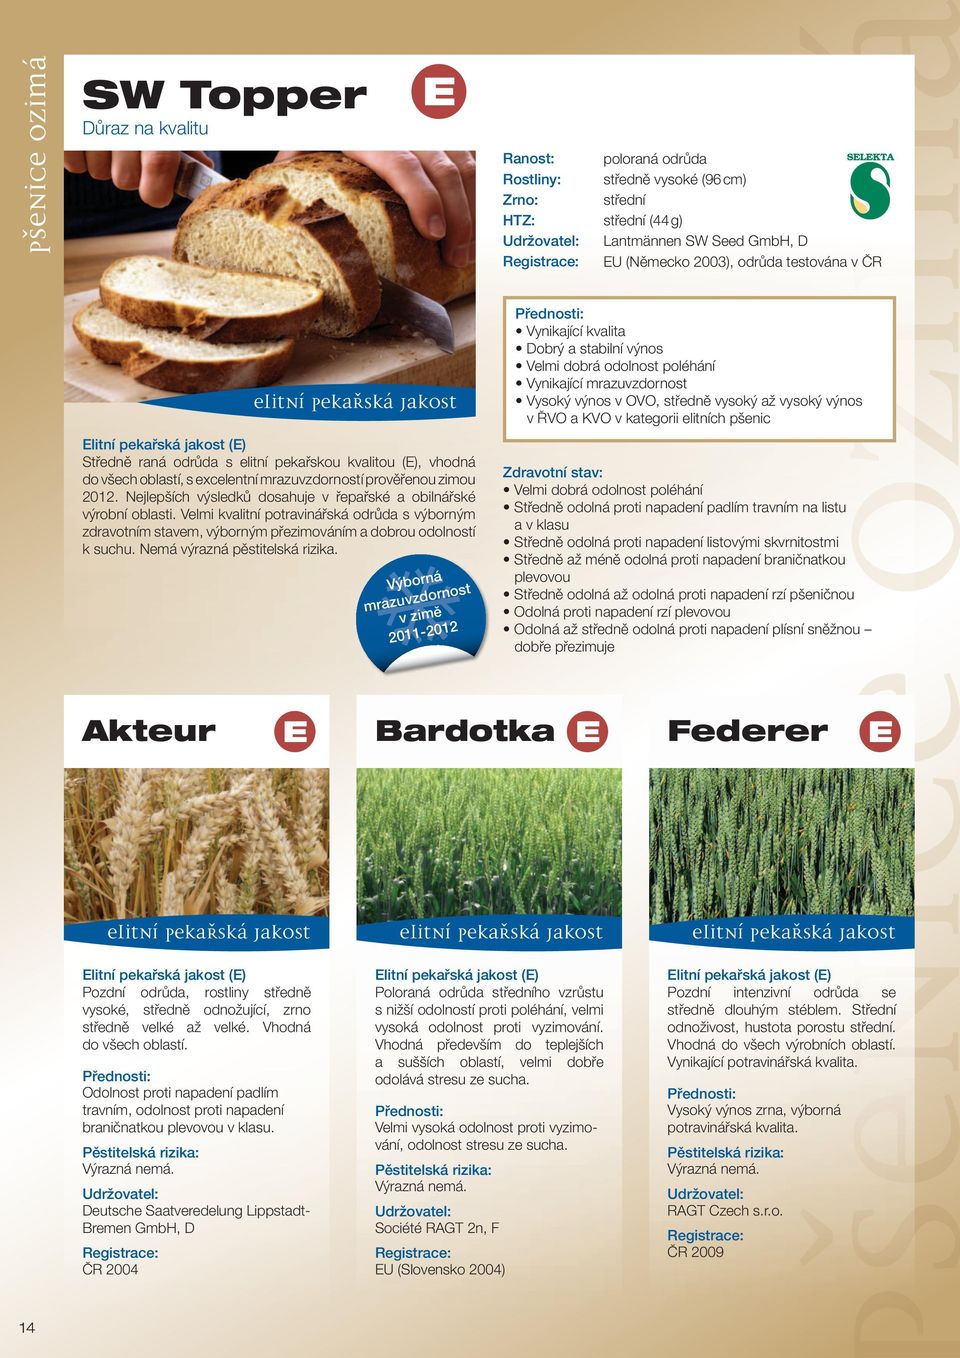 elitních pšenic Elitní pekařská jakost (E) Středně raná odrůda s elitní pekařskou kvalitou (E), vhodná do všech oblastí, s excelentní mrazuvzdorností prověřenou zimou 2012.